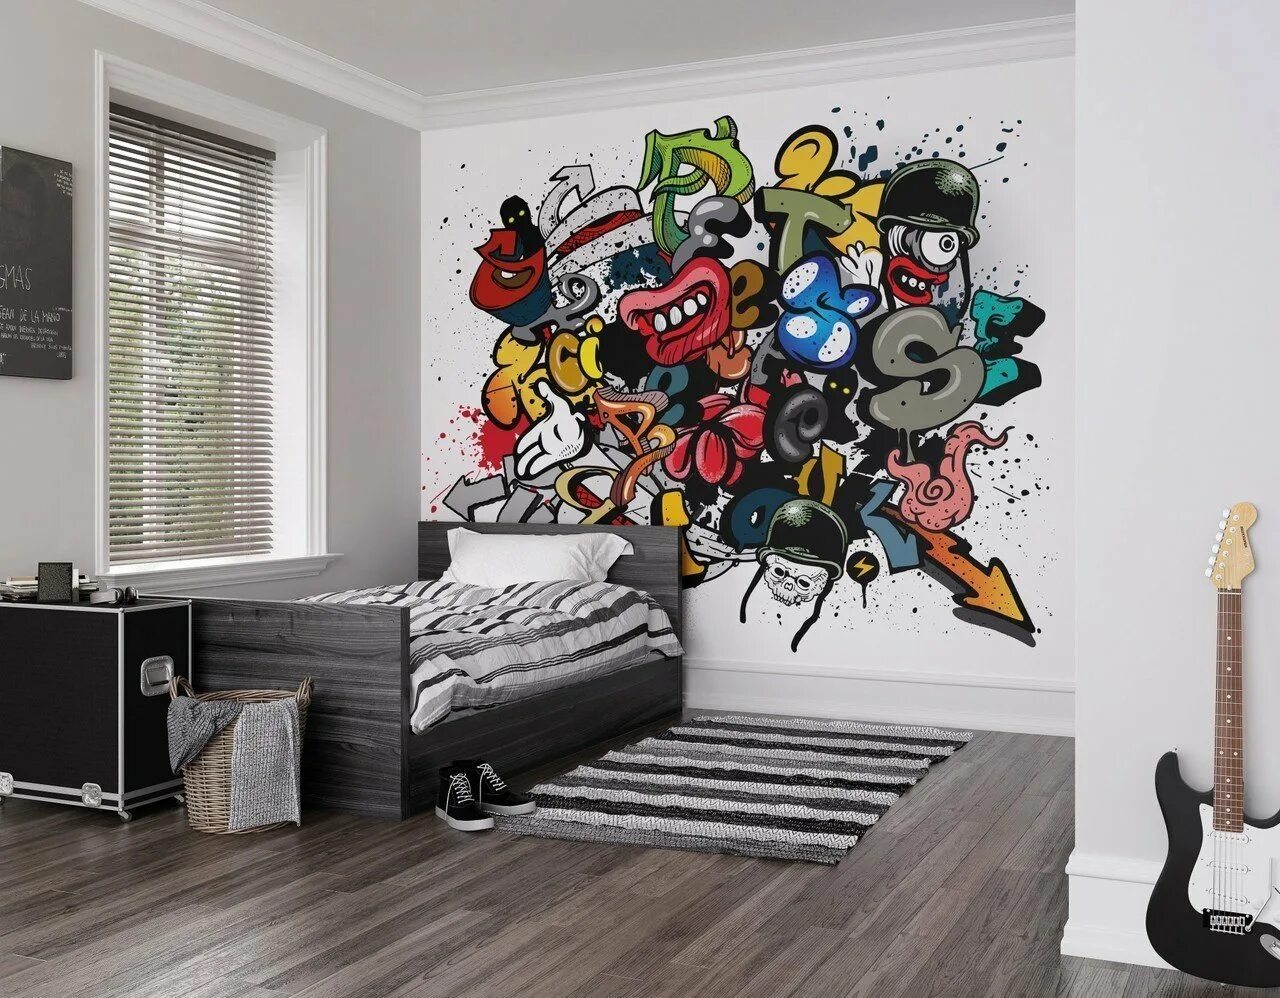 Крутой стен. Разрисованные стены в комнате подростка. Граффити в комнате. Роспись стен для подростка мальчика. Граффити на стене в квартире.